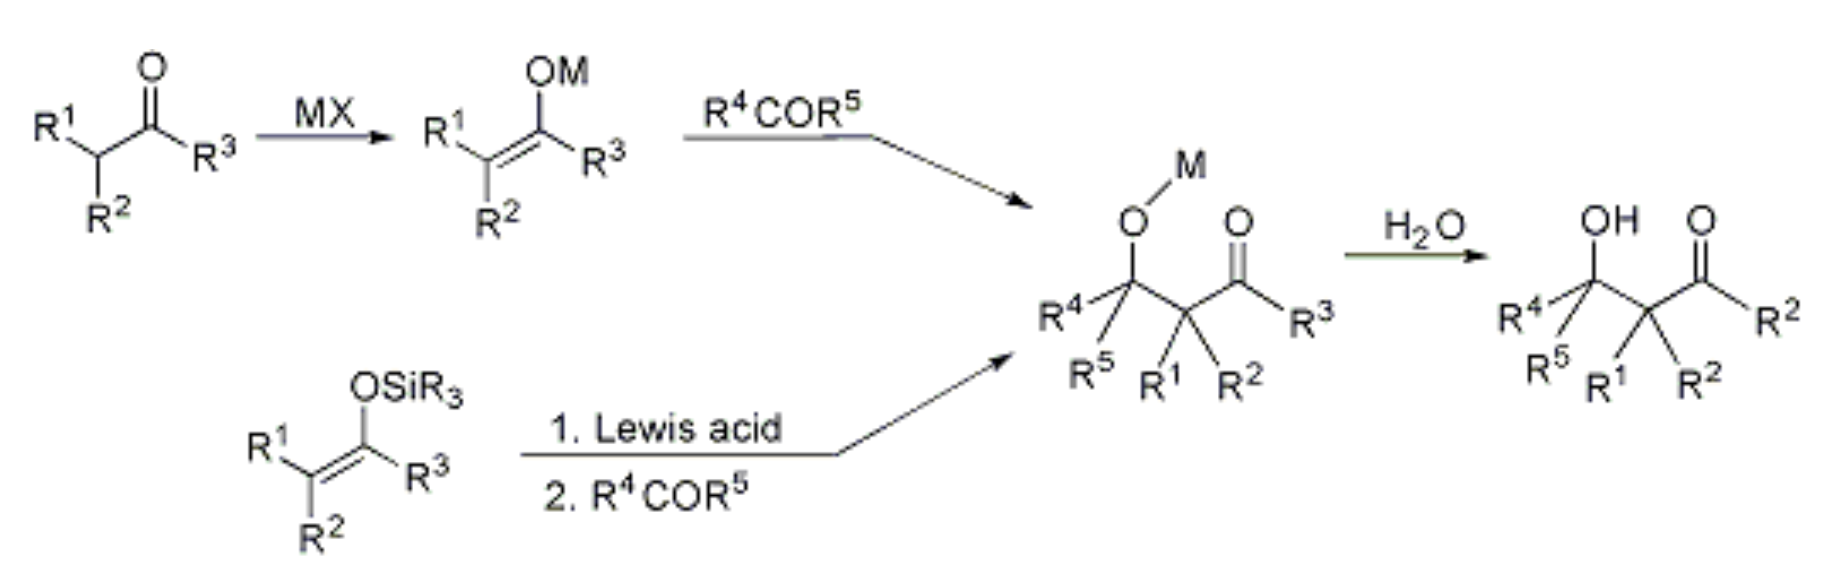 Aldol condensation - aldol reaction - general reaction scheme